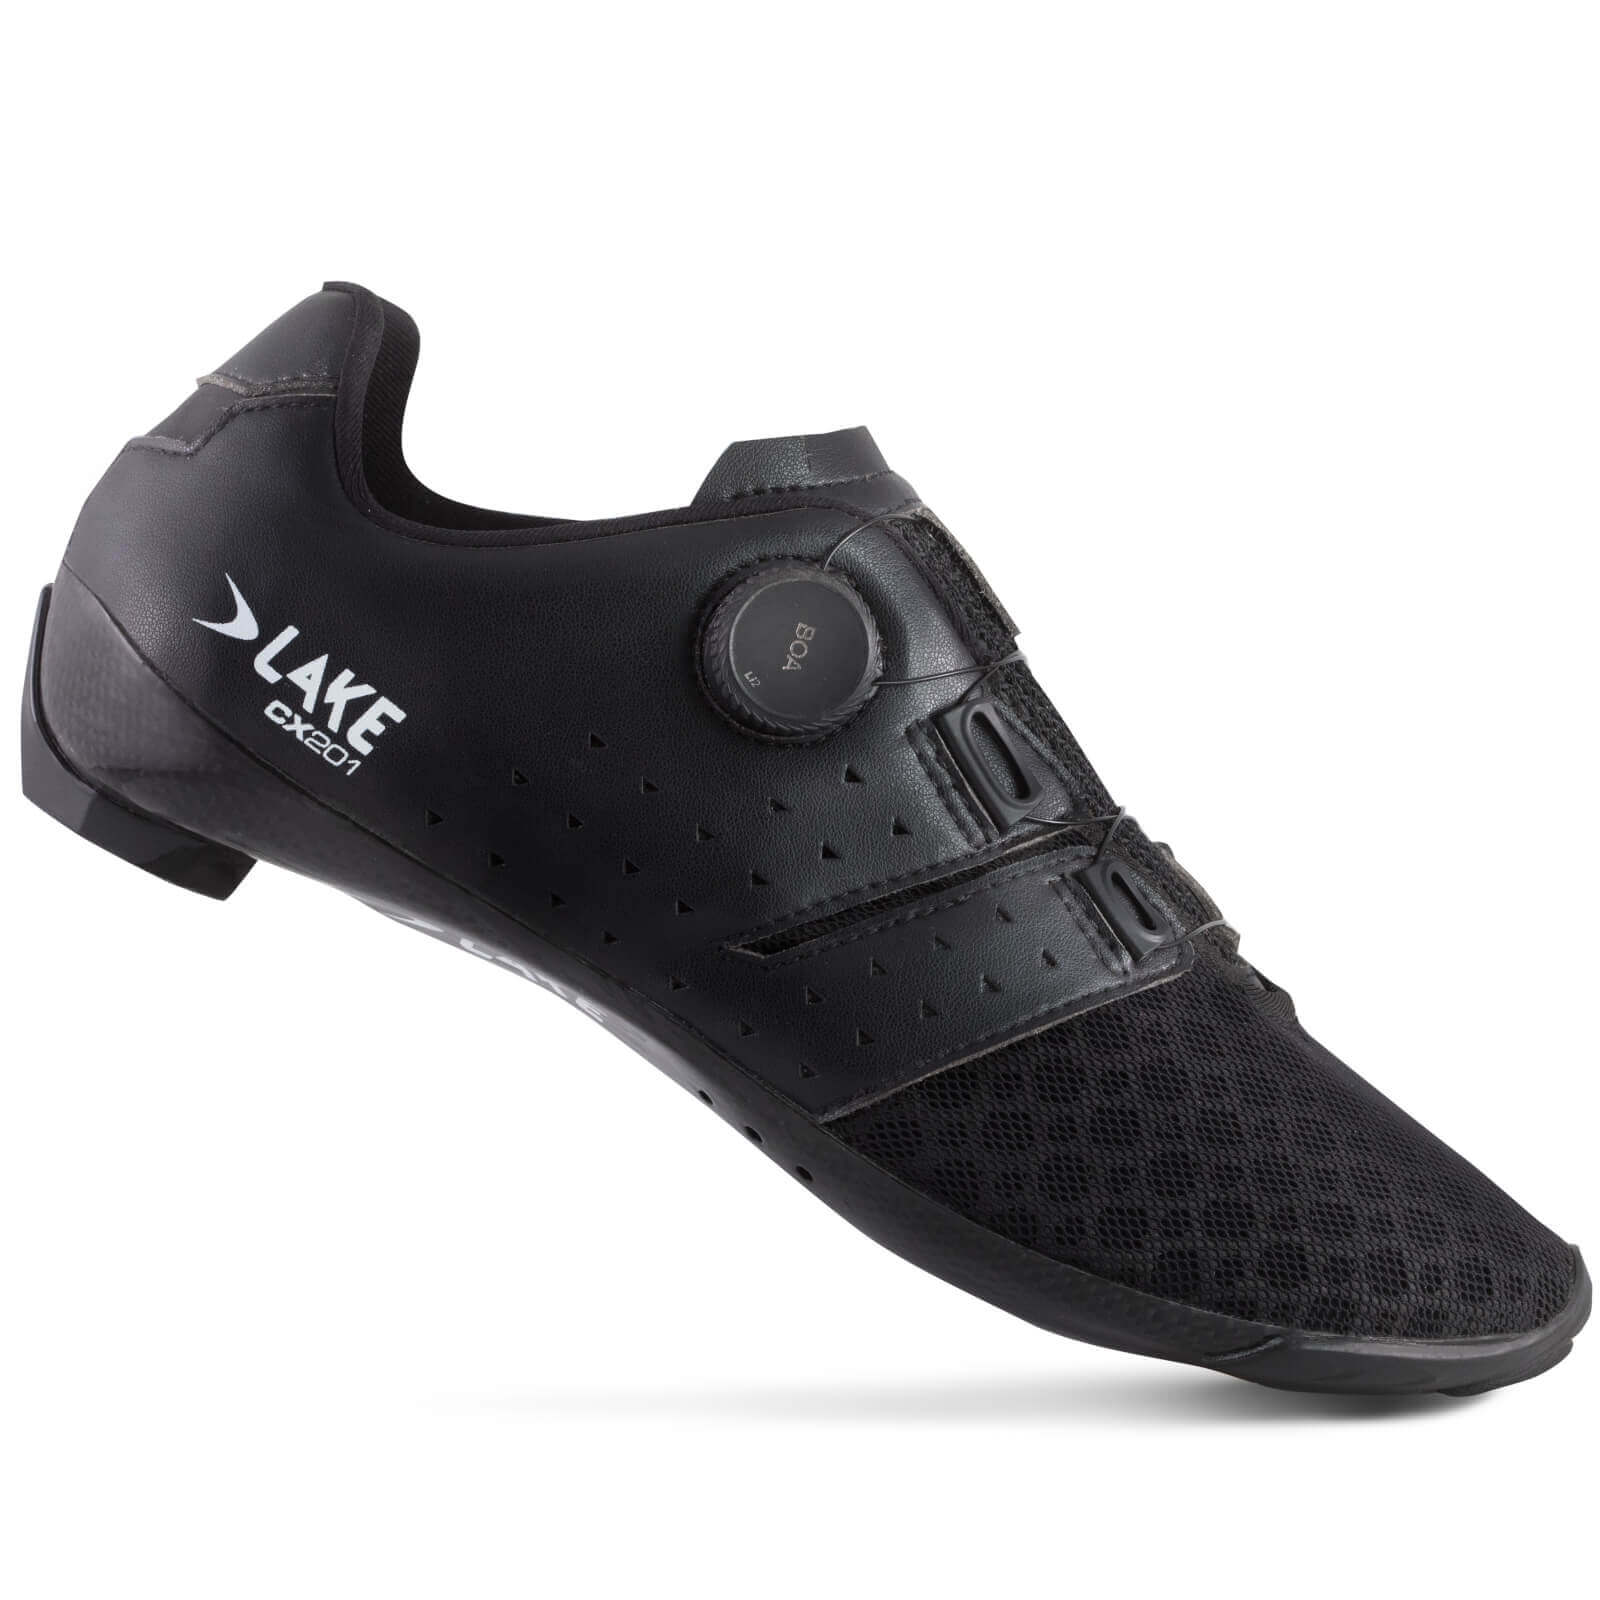 Lake CX201 Road Shoes - EU 41 - Black